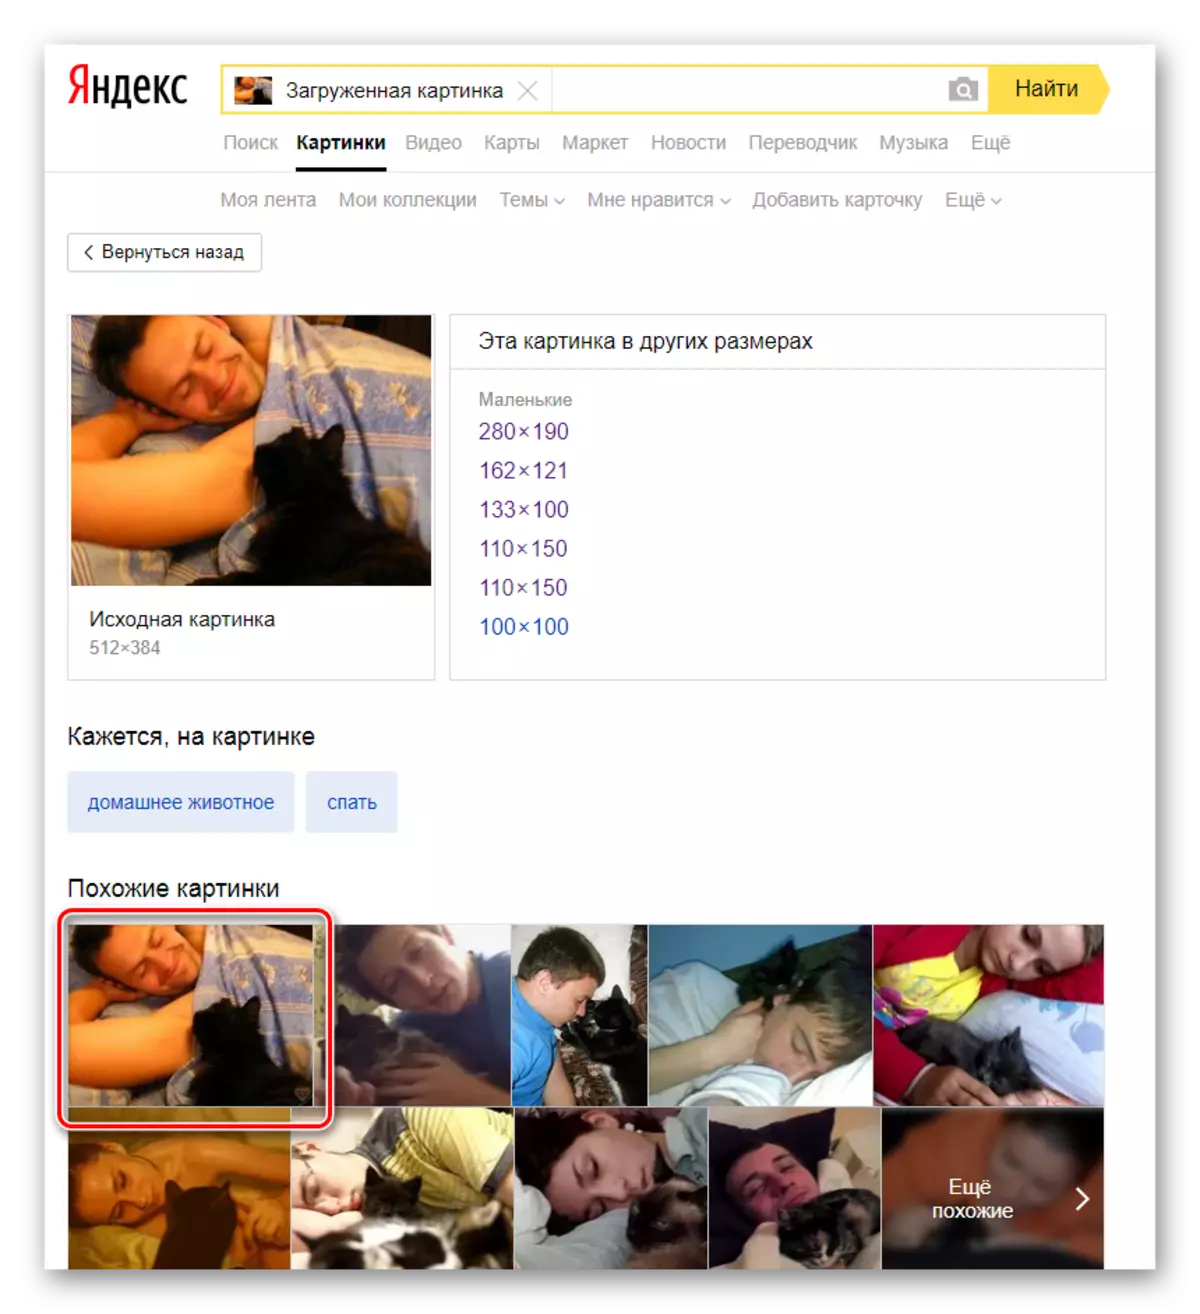 Nađenih u Yandex slikama